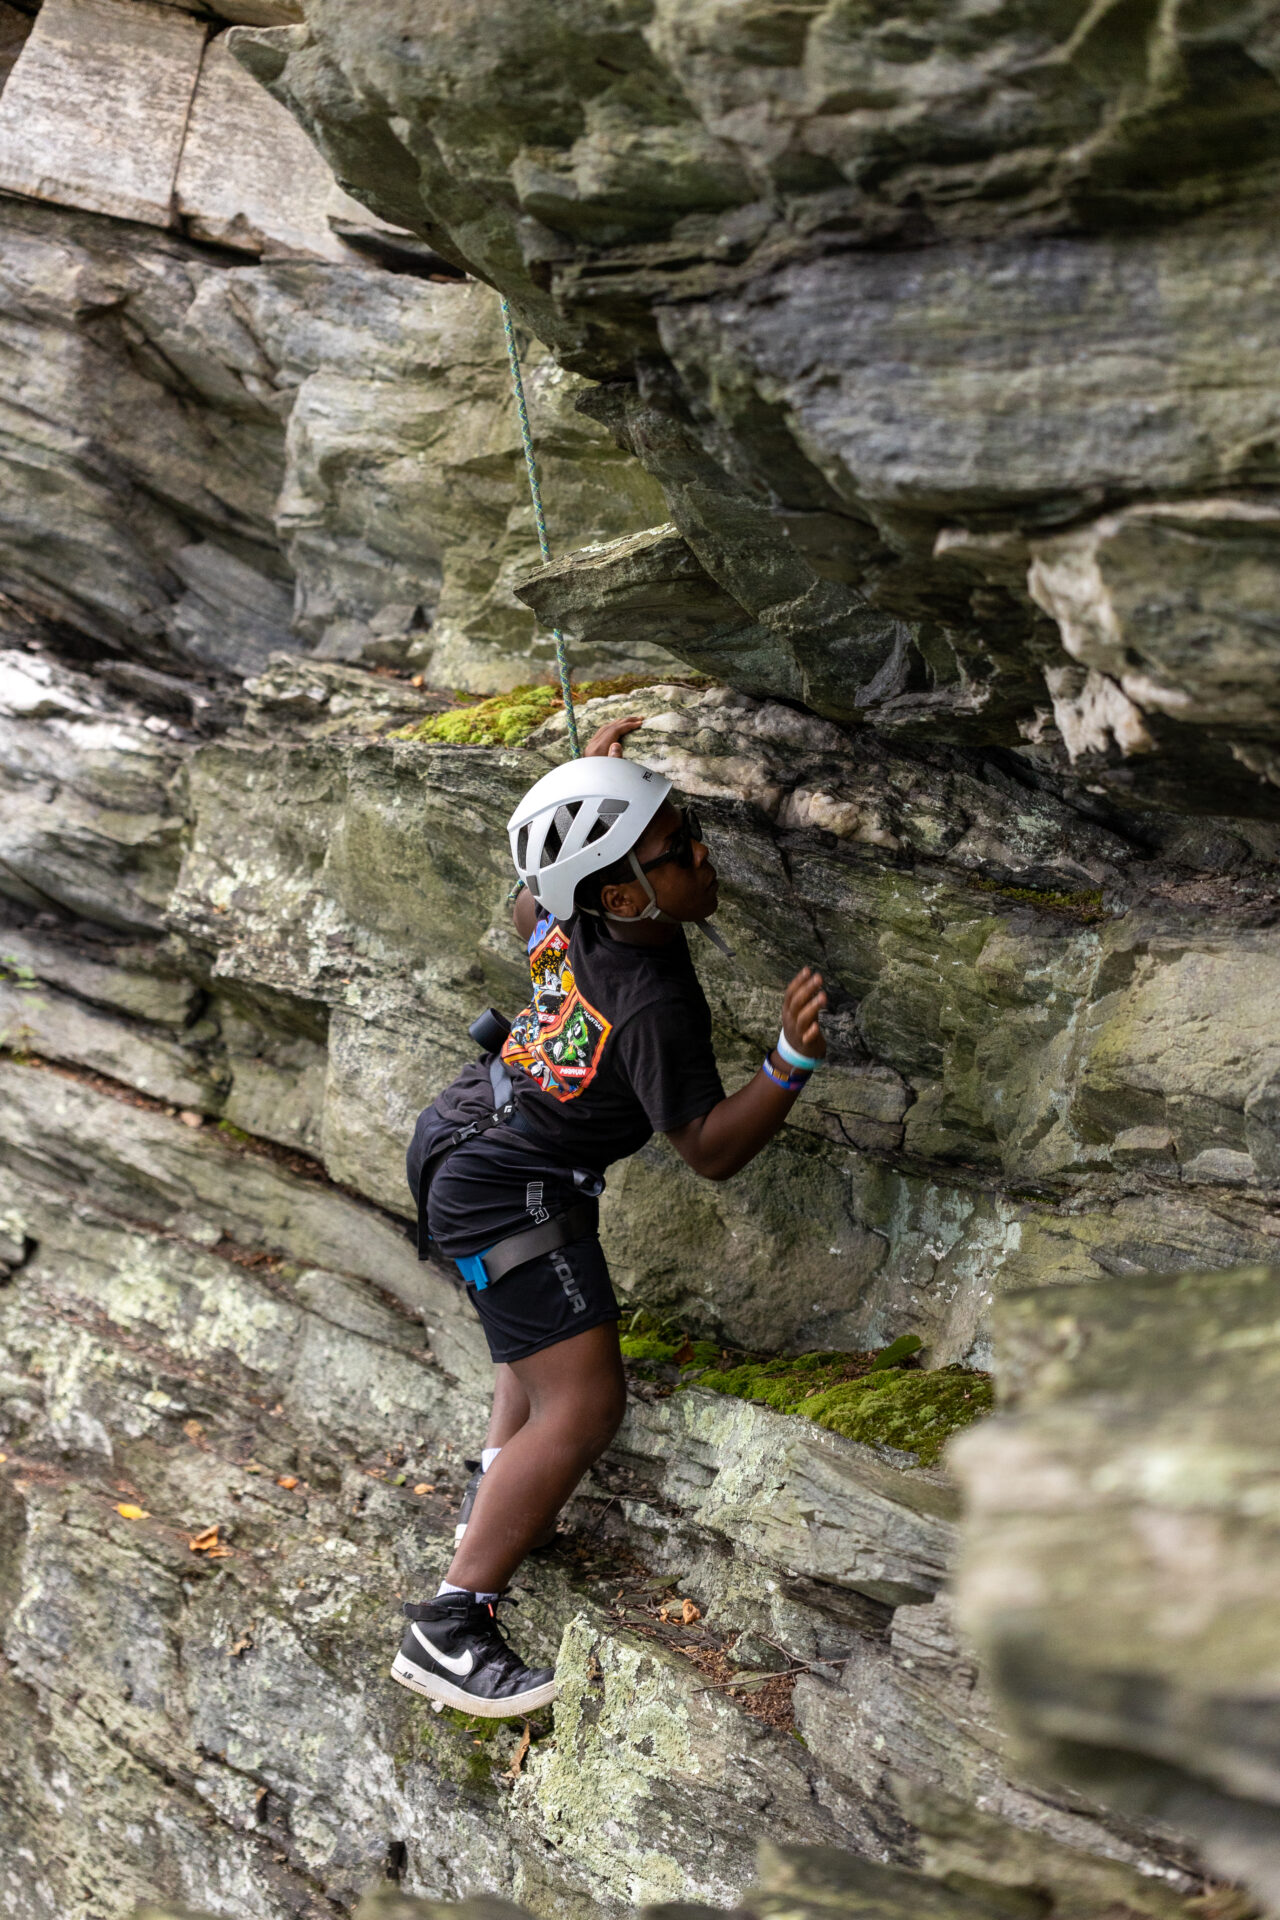 BearTrax - A fearless climber scaling a treacherous rocky cliff.